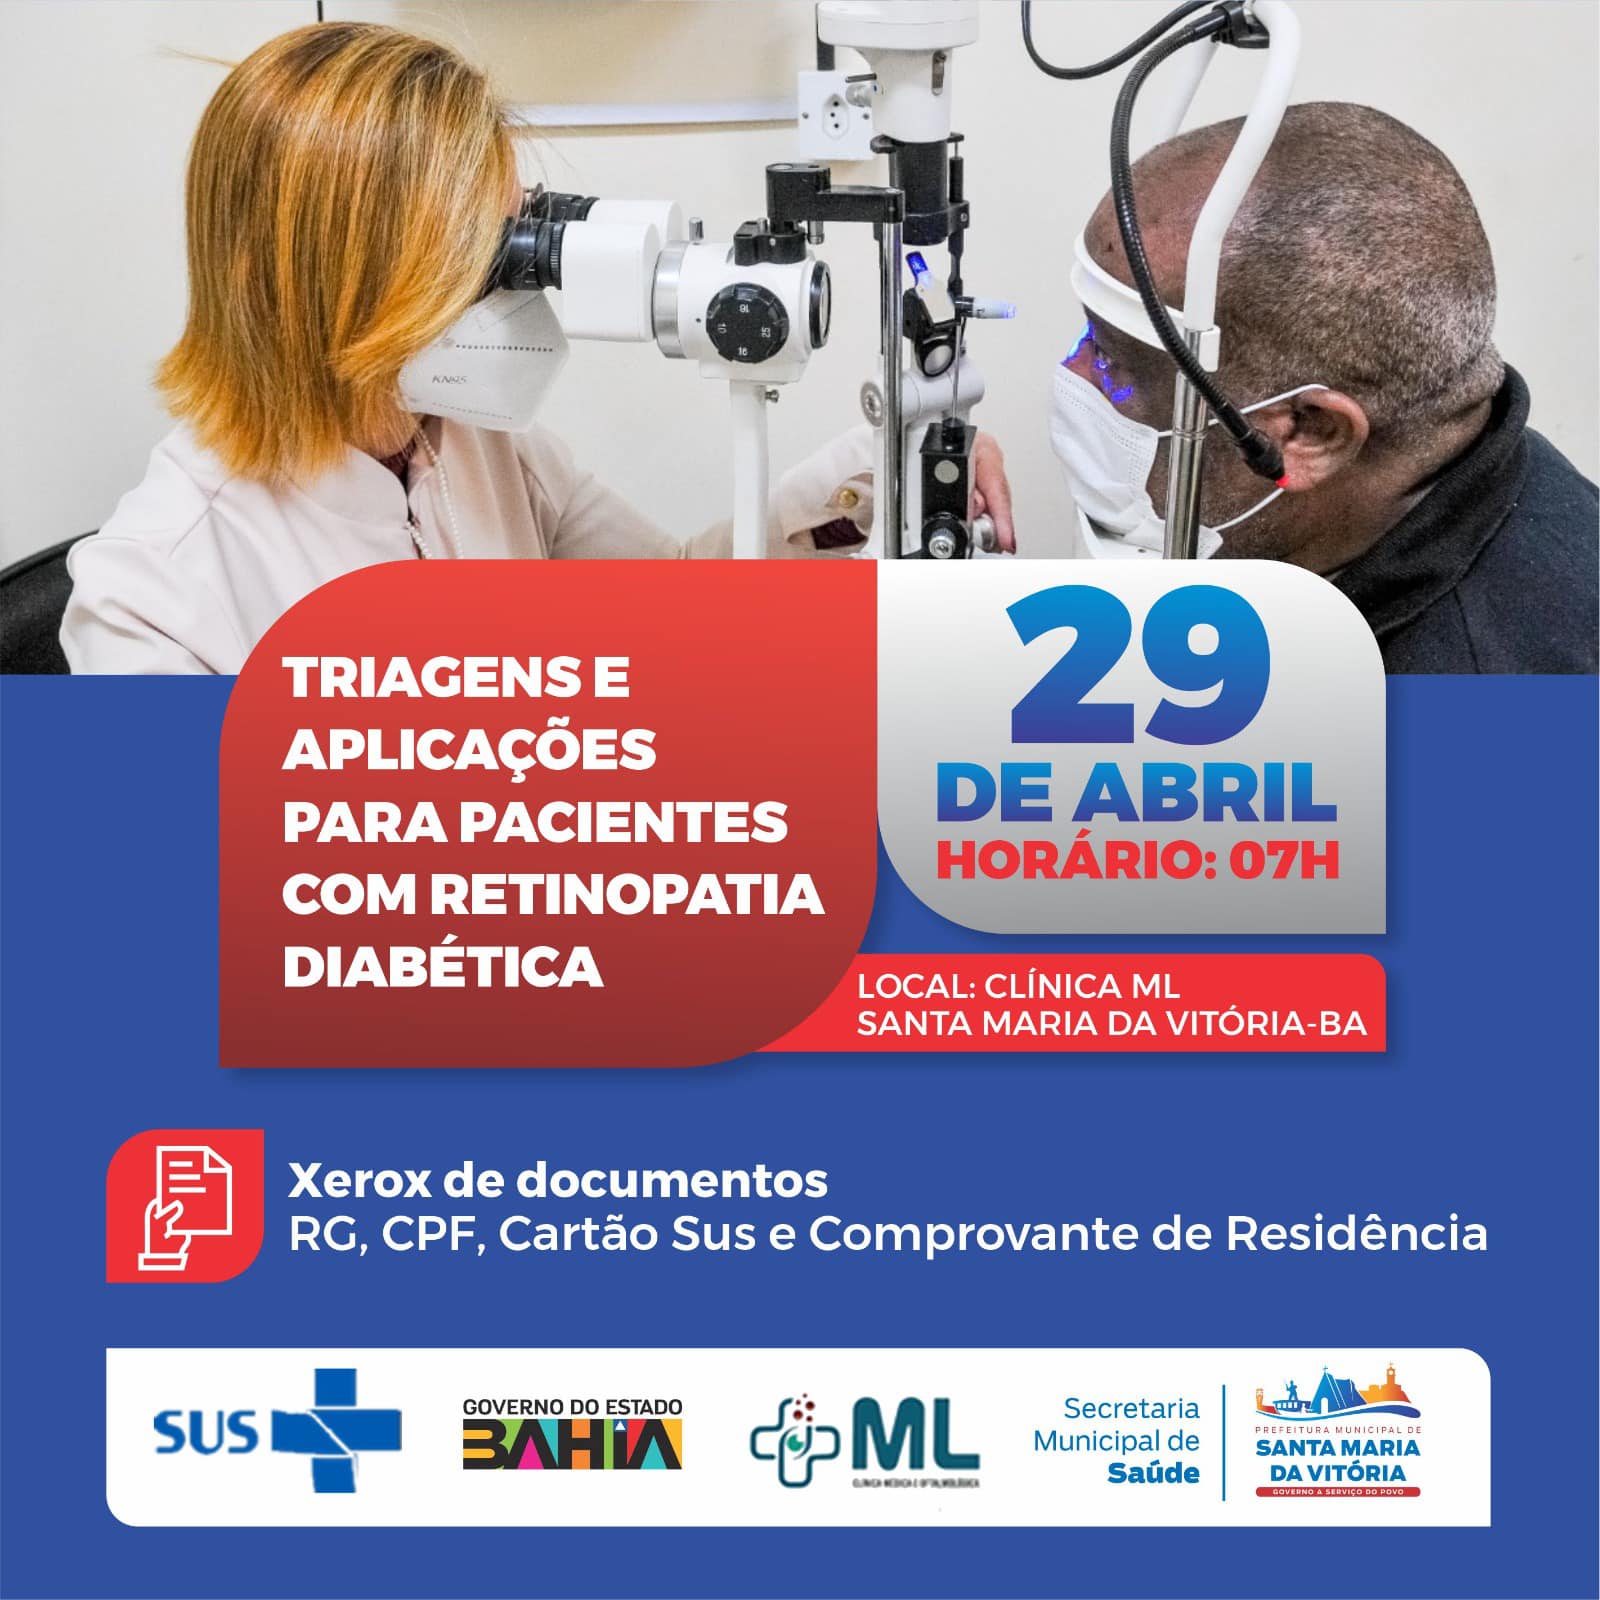 Os agendamentos de triagens e aplicações para pacientes com retinopatia diabética serão realizados a partir das 7h, do dia 29/04, segunda-feira, na Clínica ML, localizada na Rua Dep. Adão Souza, 280.